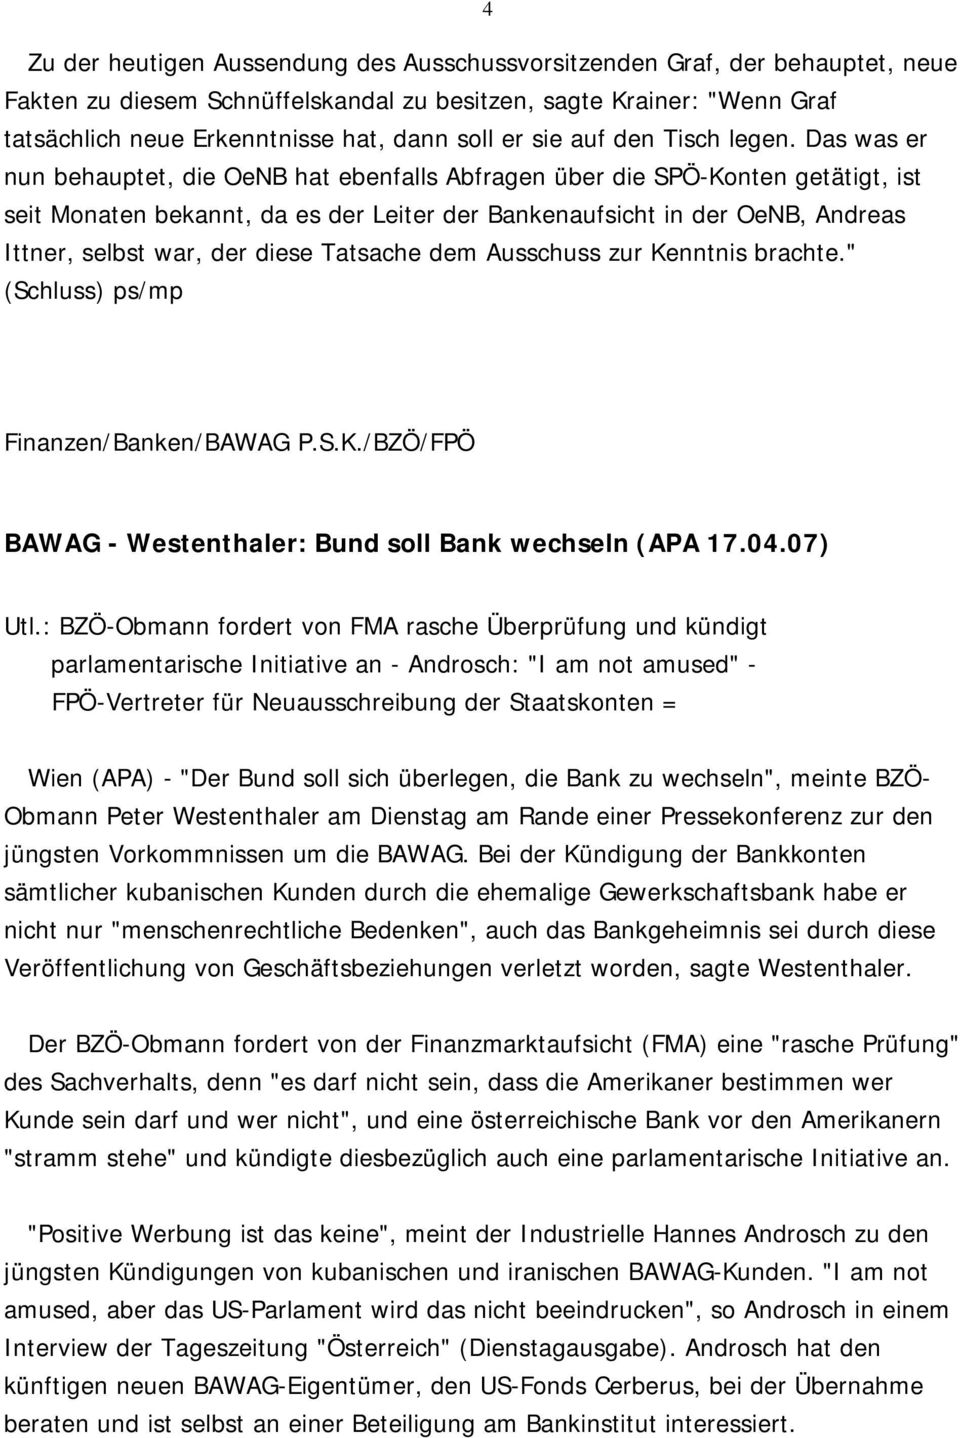 Das was er nun behauptet, die OeNB hat ebenfalls Abfragen über die SPÖ-Konten getätigt, ist seit Monaten bekannt, da es der Leiter der Bankenaufsicht in der OeNB, Andreas Ittner, selbst war, der